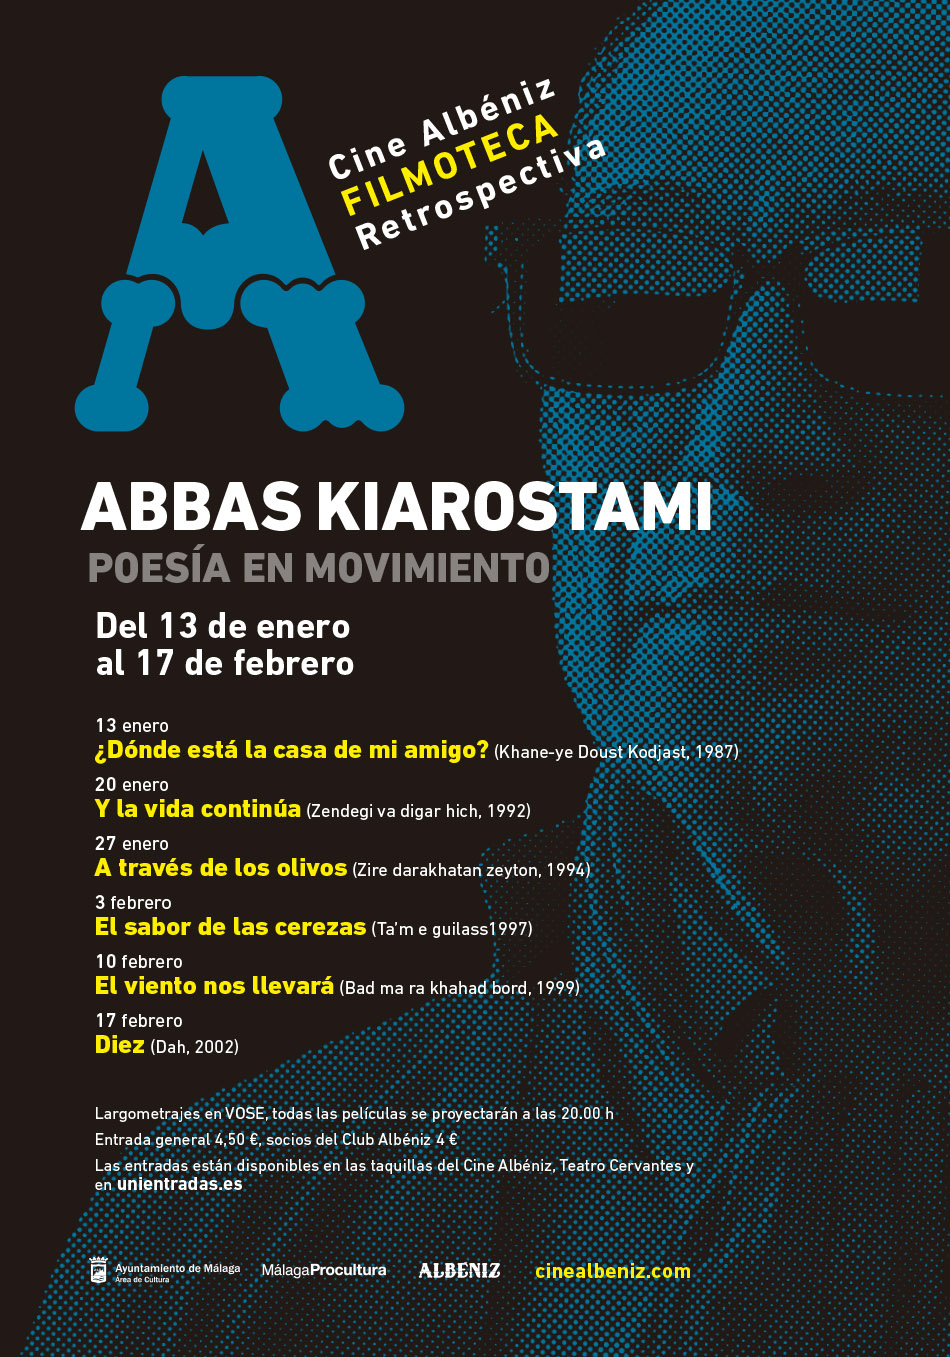 El Cine Albéniz programa una retrospectiva del director iraní Abbas Kiarostami en su Filmoteca